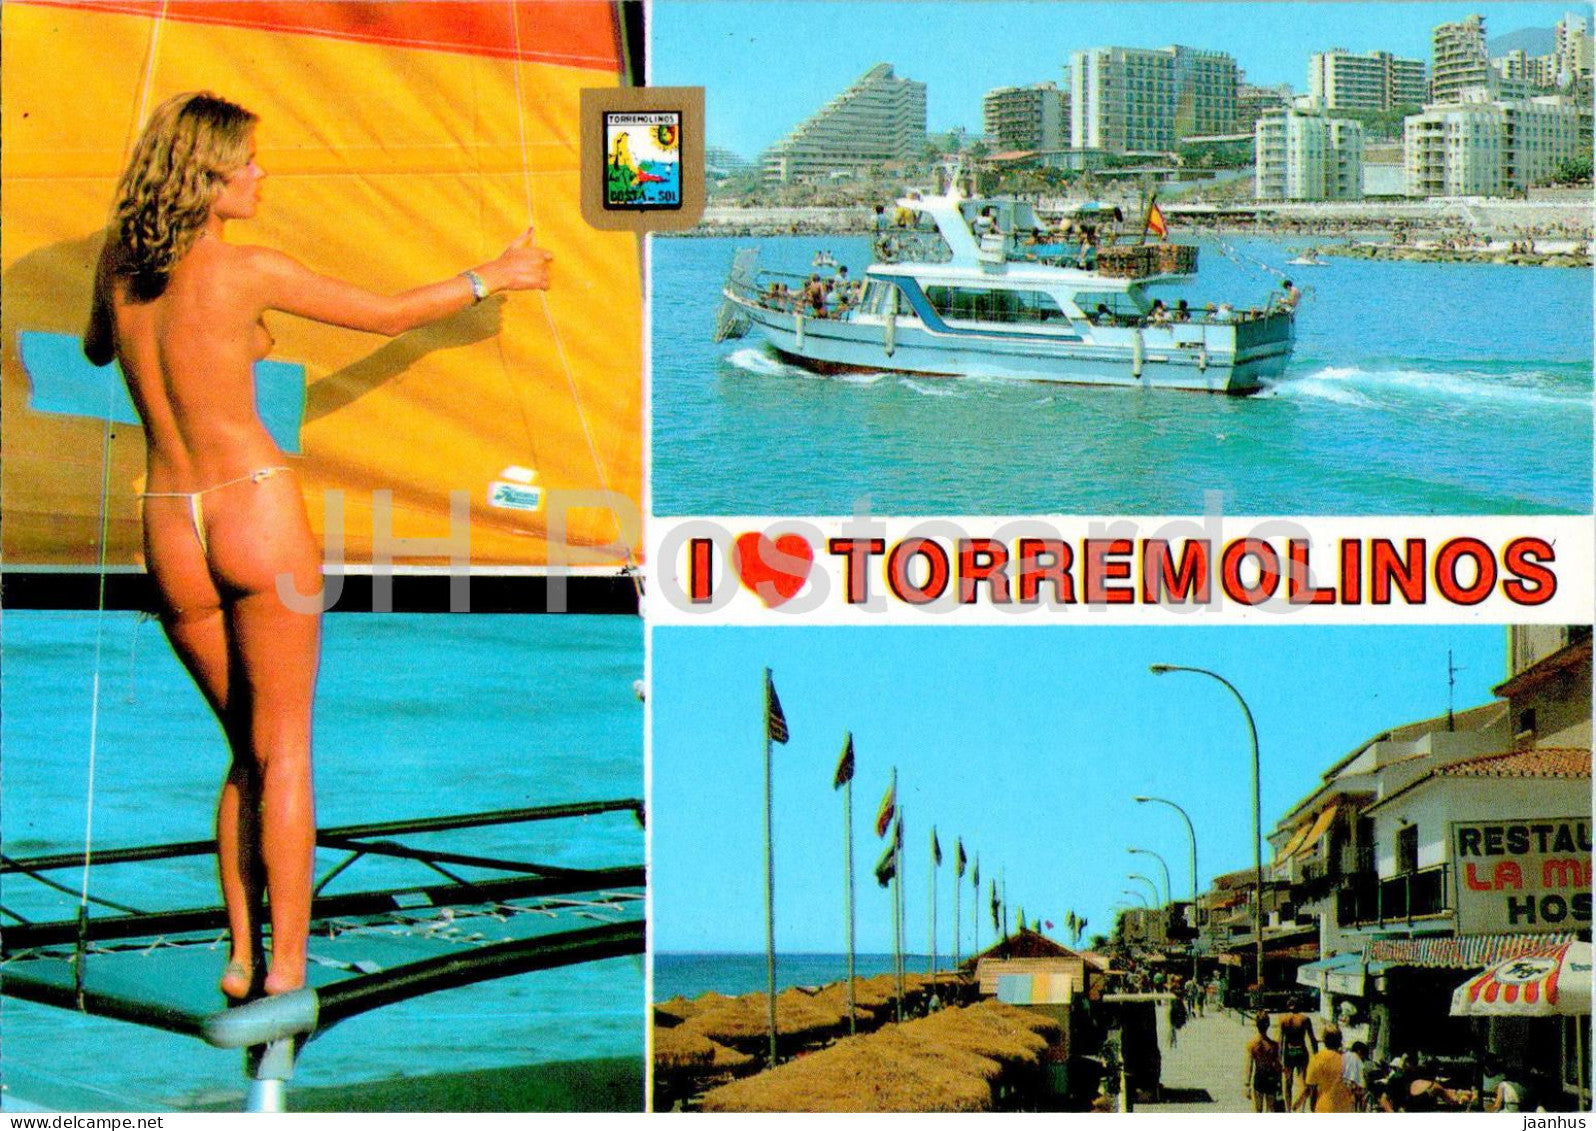 Torremolinos - Costa del Sol - Benalmadena Costa - La Carihuela - nude naked woman - boat - 125 - Spain - used - JH Postcards